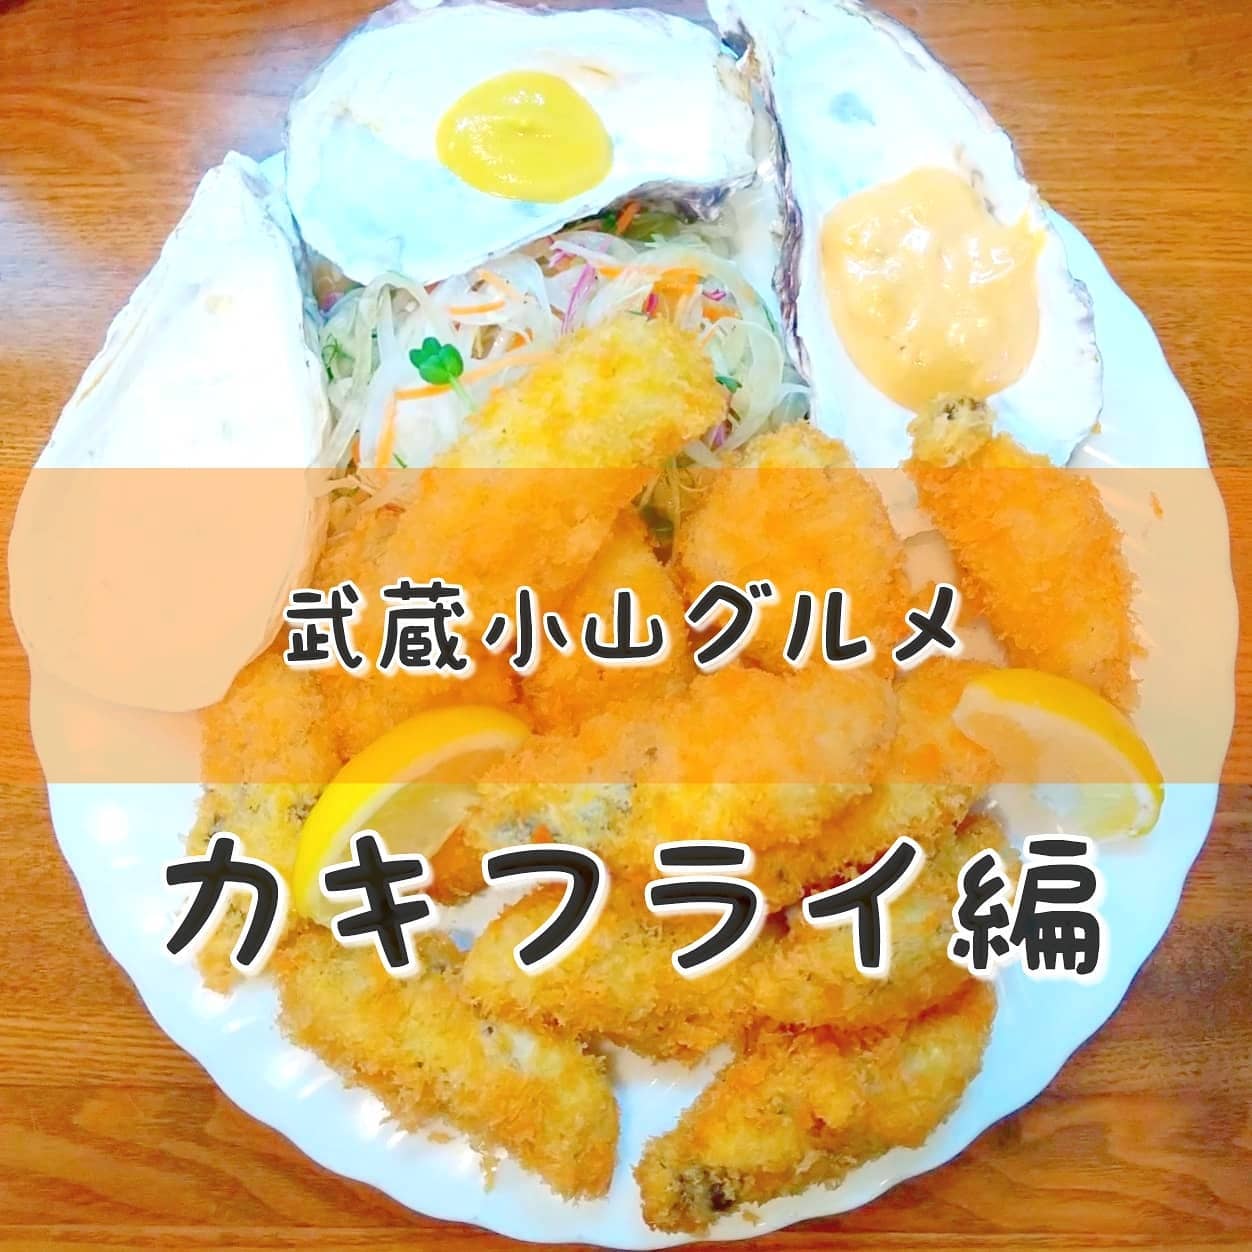 東京 カキフライ 東京のメチャ美味い牡蠣フライ10選 [食べログまとめ]